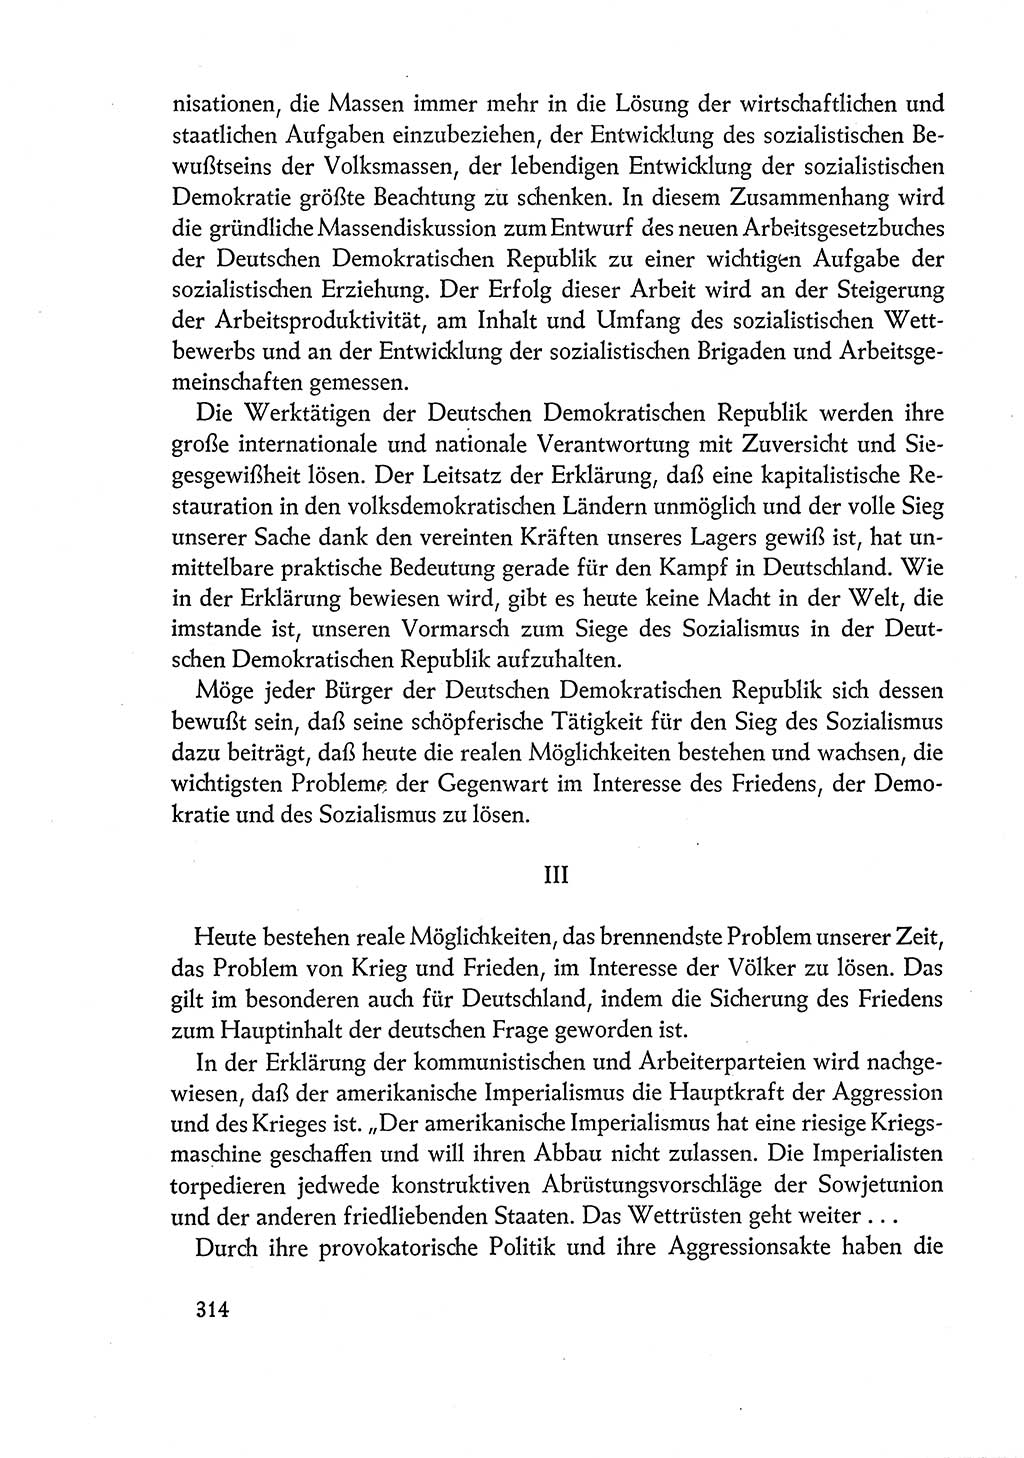 Dokumente der Sozialistischen Einheitspartei Deutschlands (SED) [Deutsche Demokratische Republik (DDR)] 1960-1961, Seite 314 (Dok. SED DDR 1960-1961, S. 314)